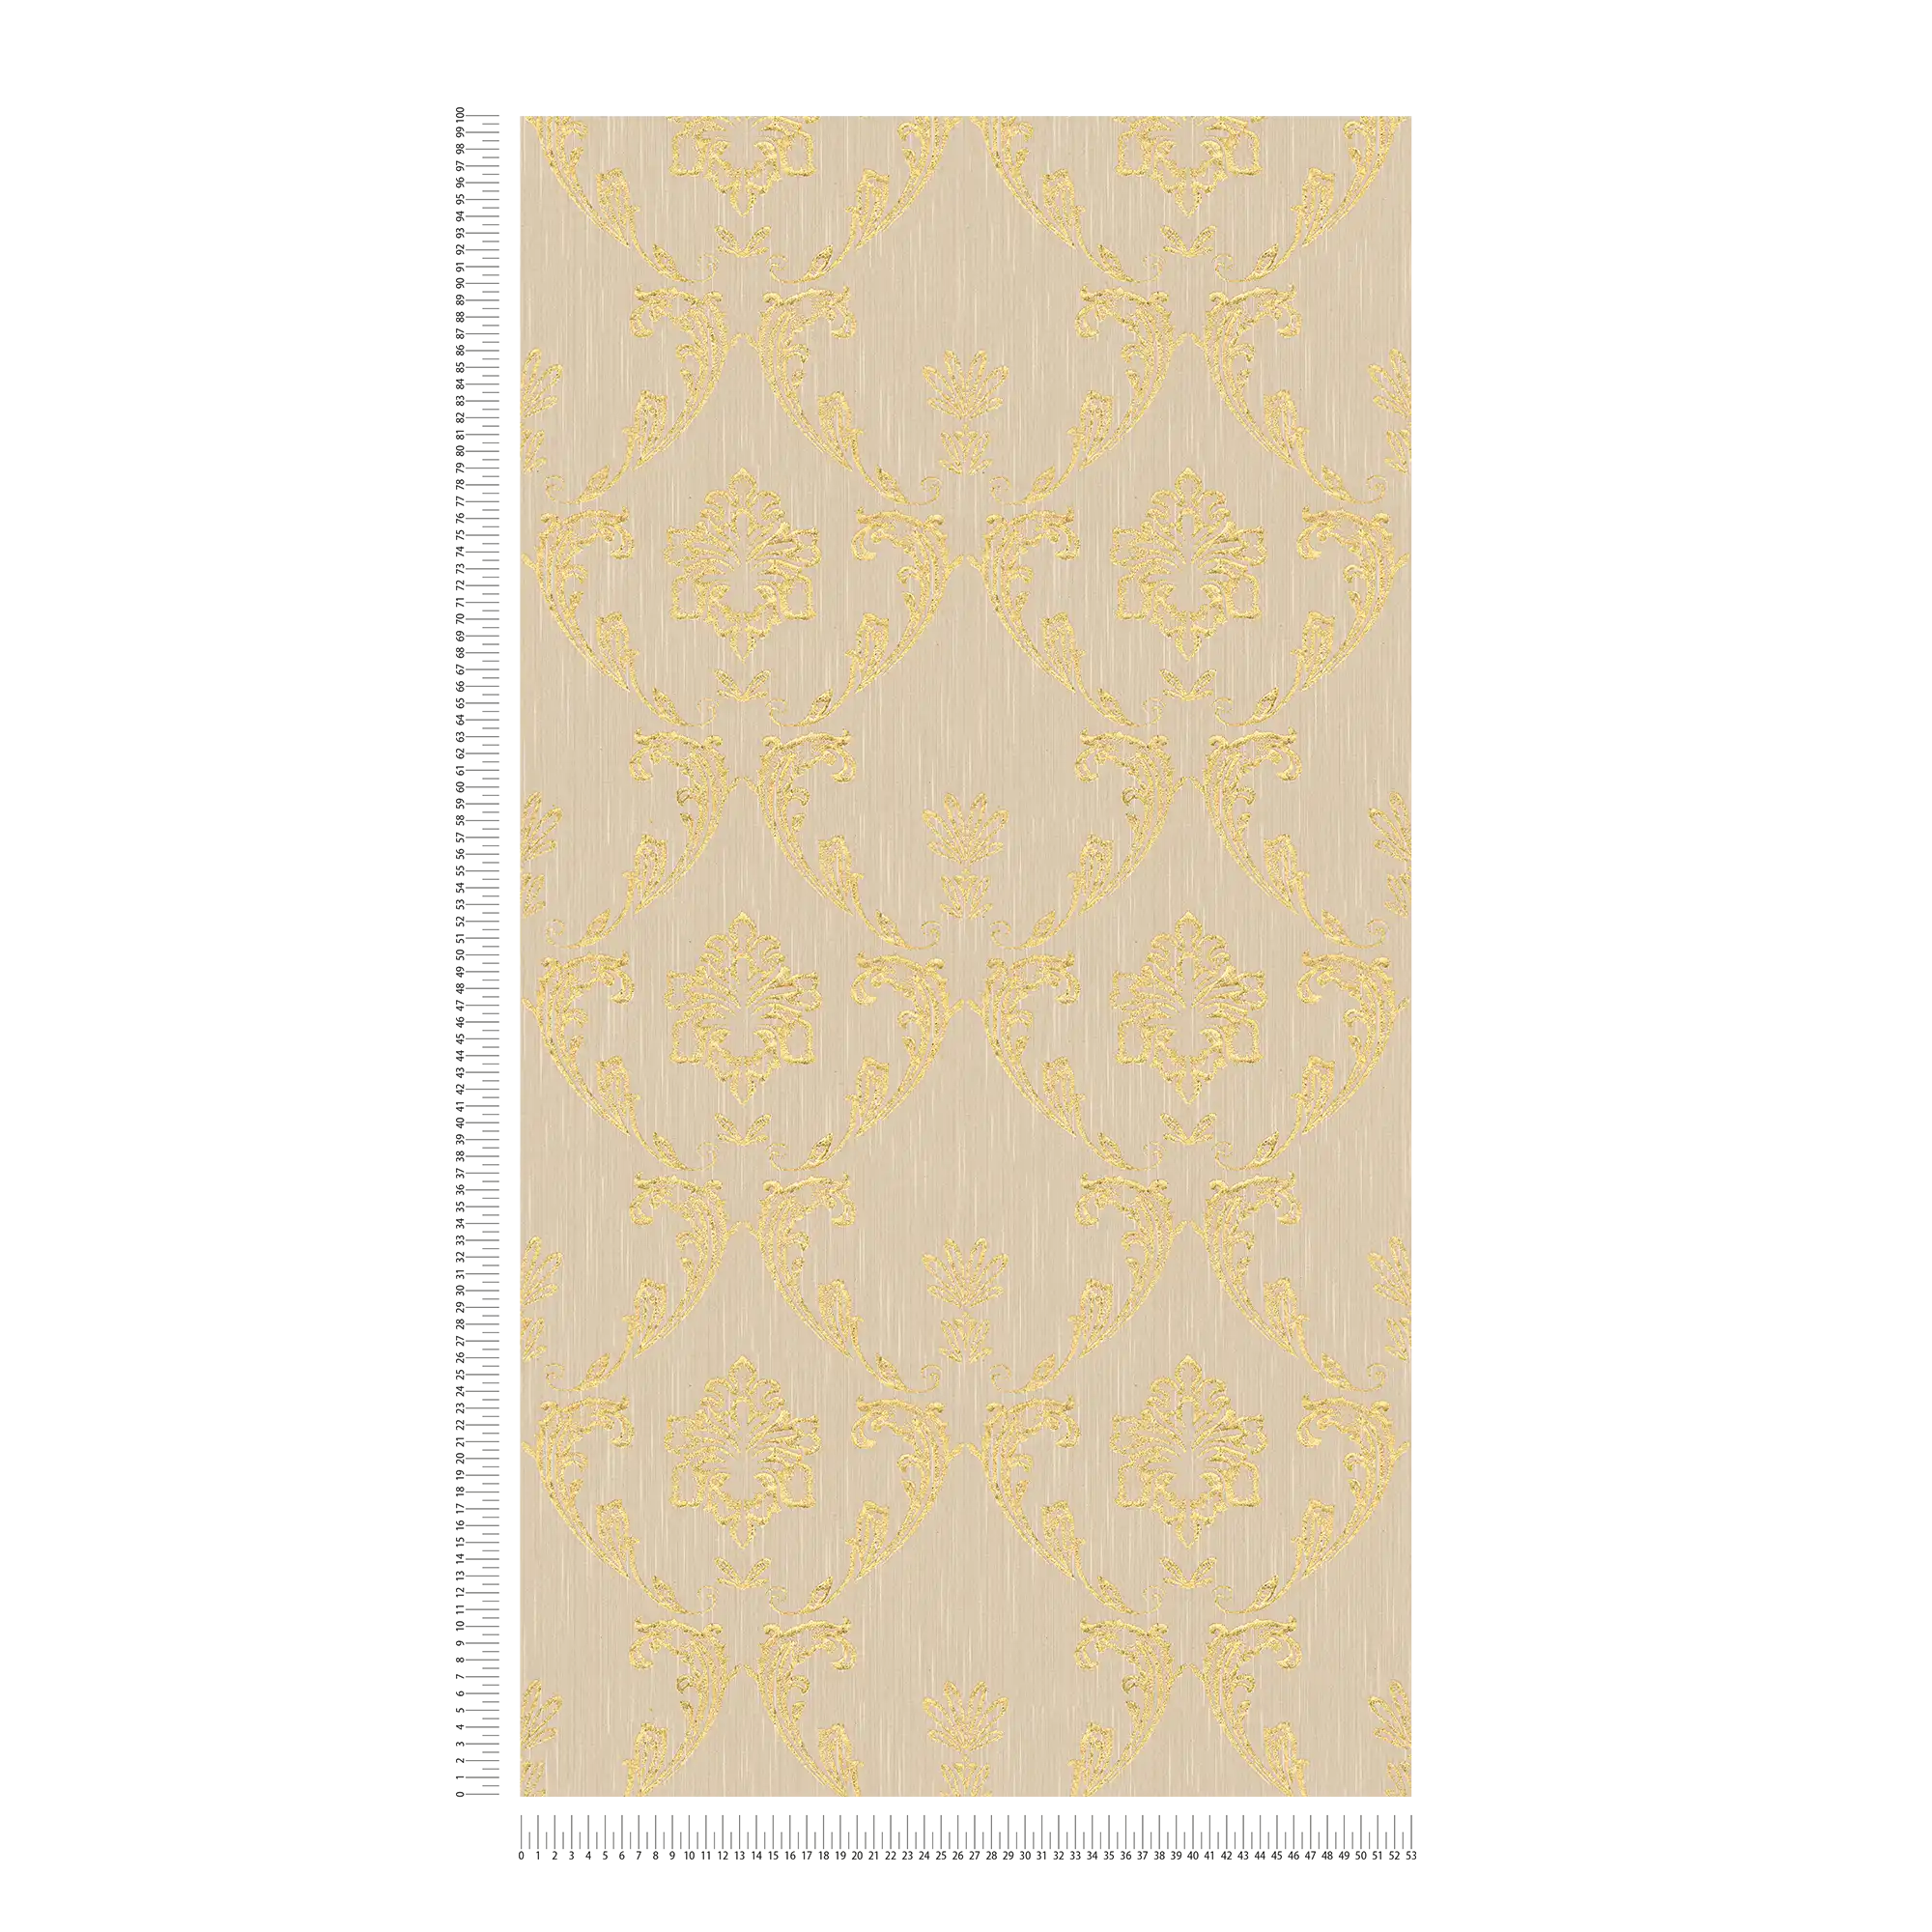             Carta da parati ornamentale con elementi floreali in oro - oro, beige
        